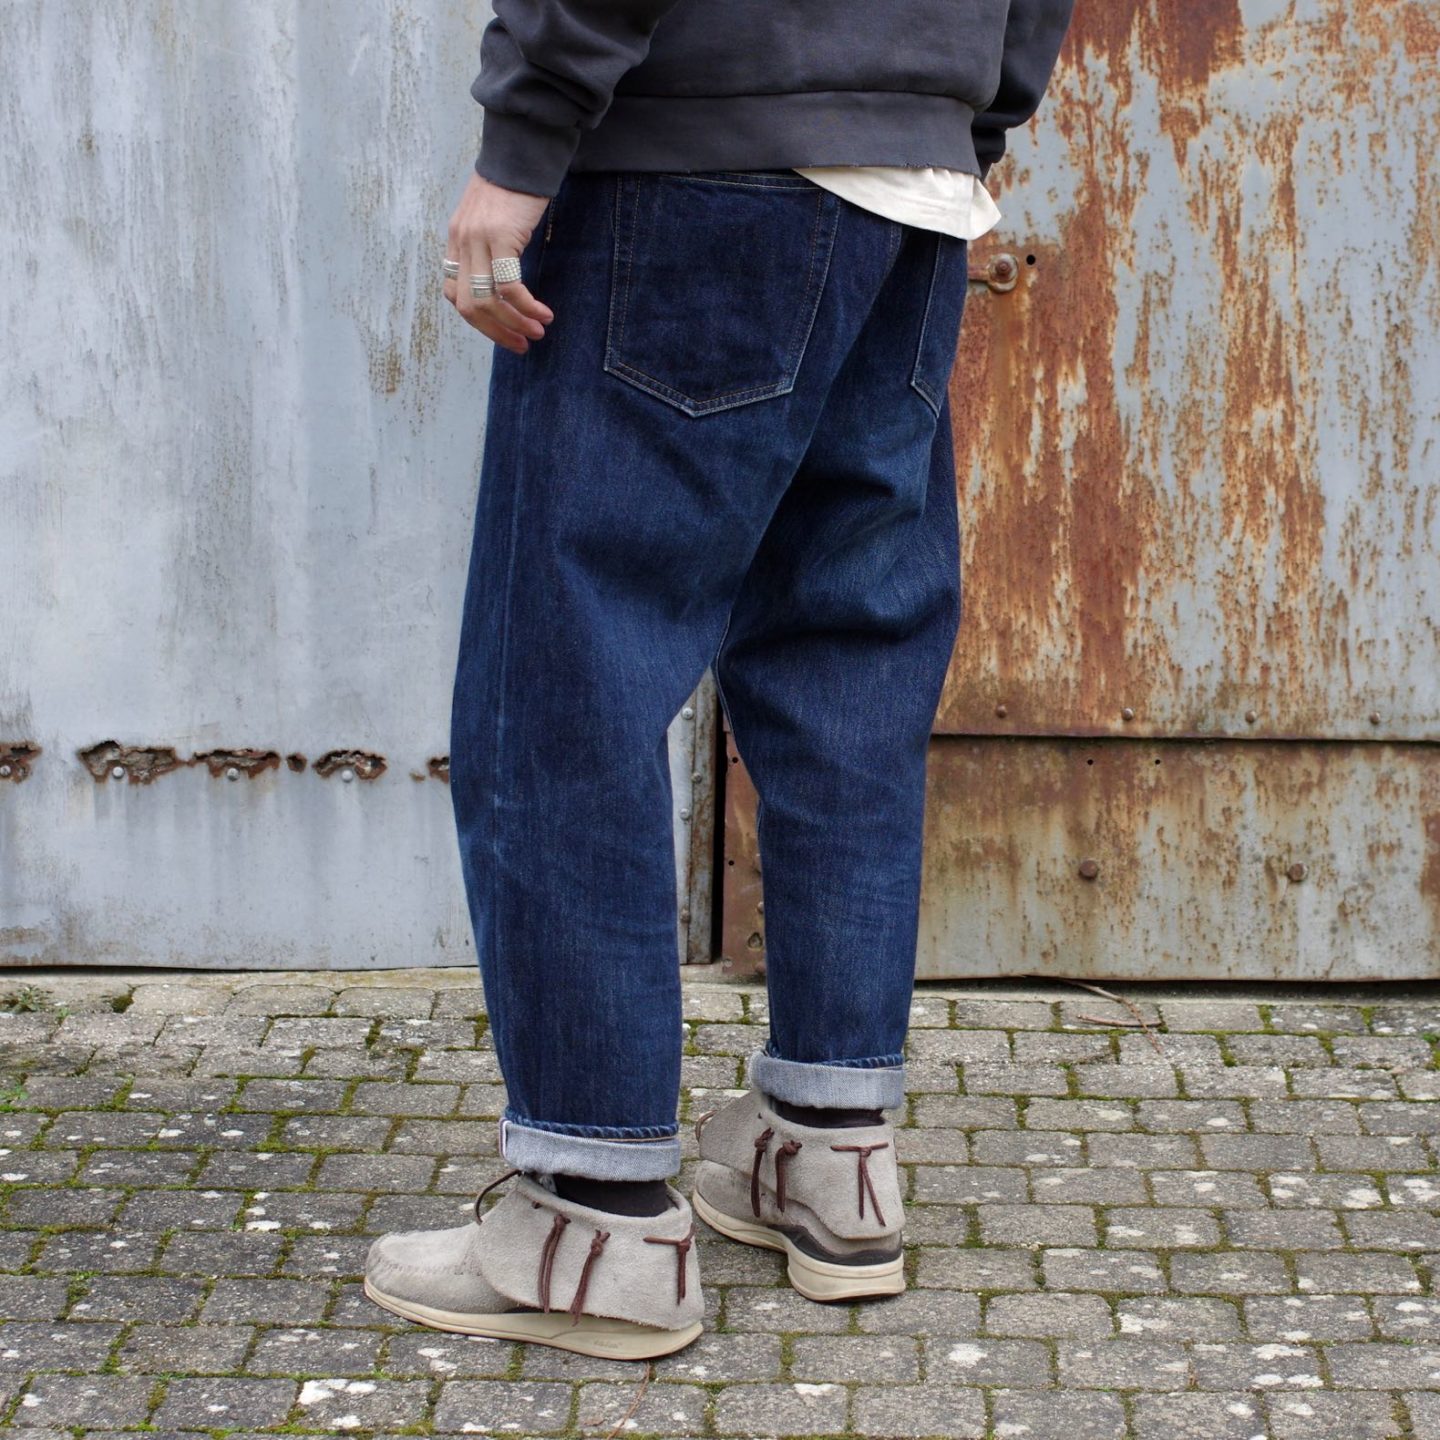 des conseils de style pour homme pour bien porter un jean brut tapered